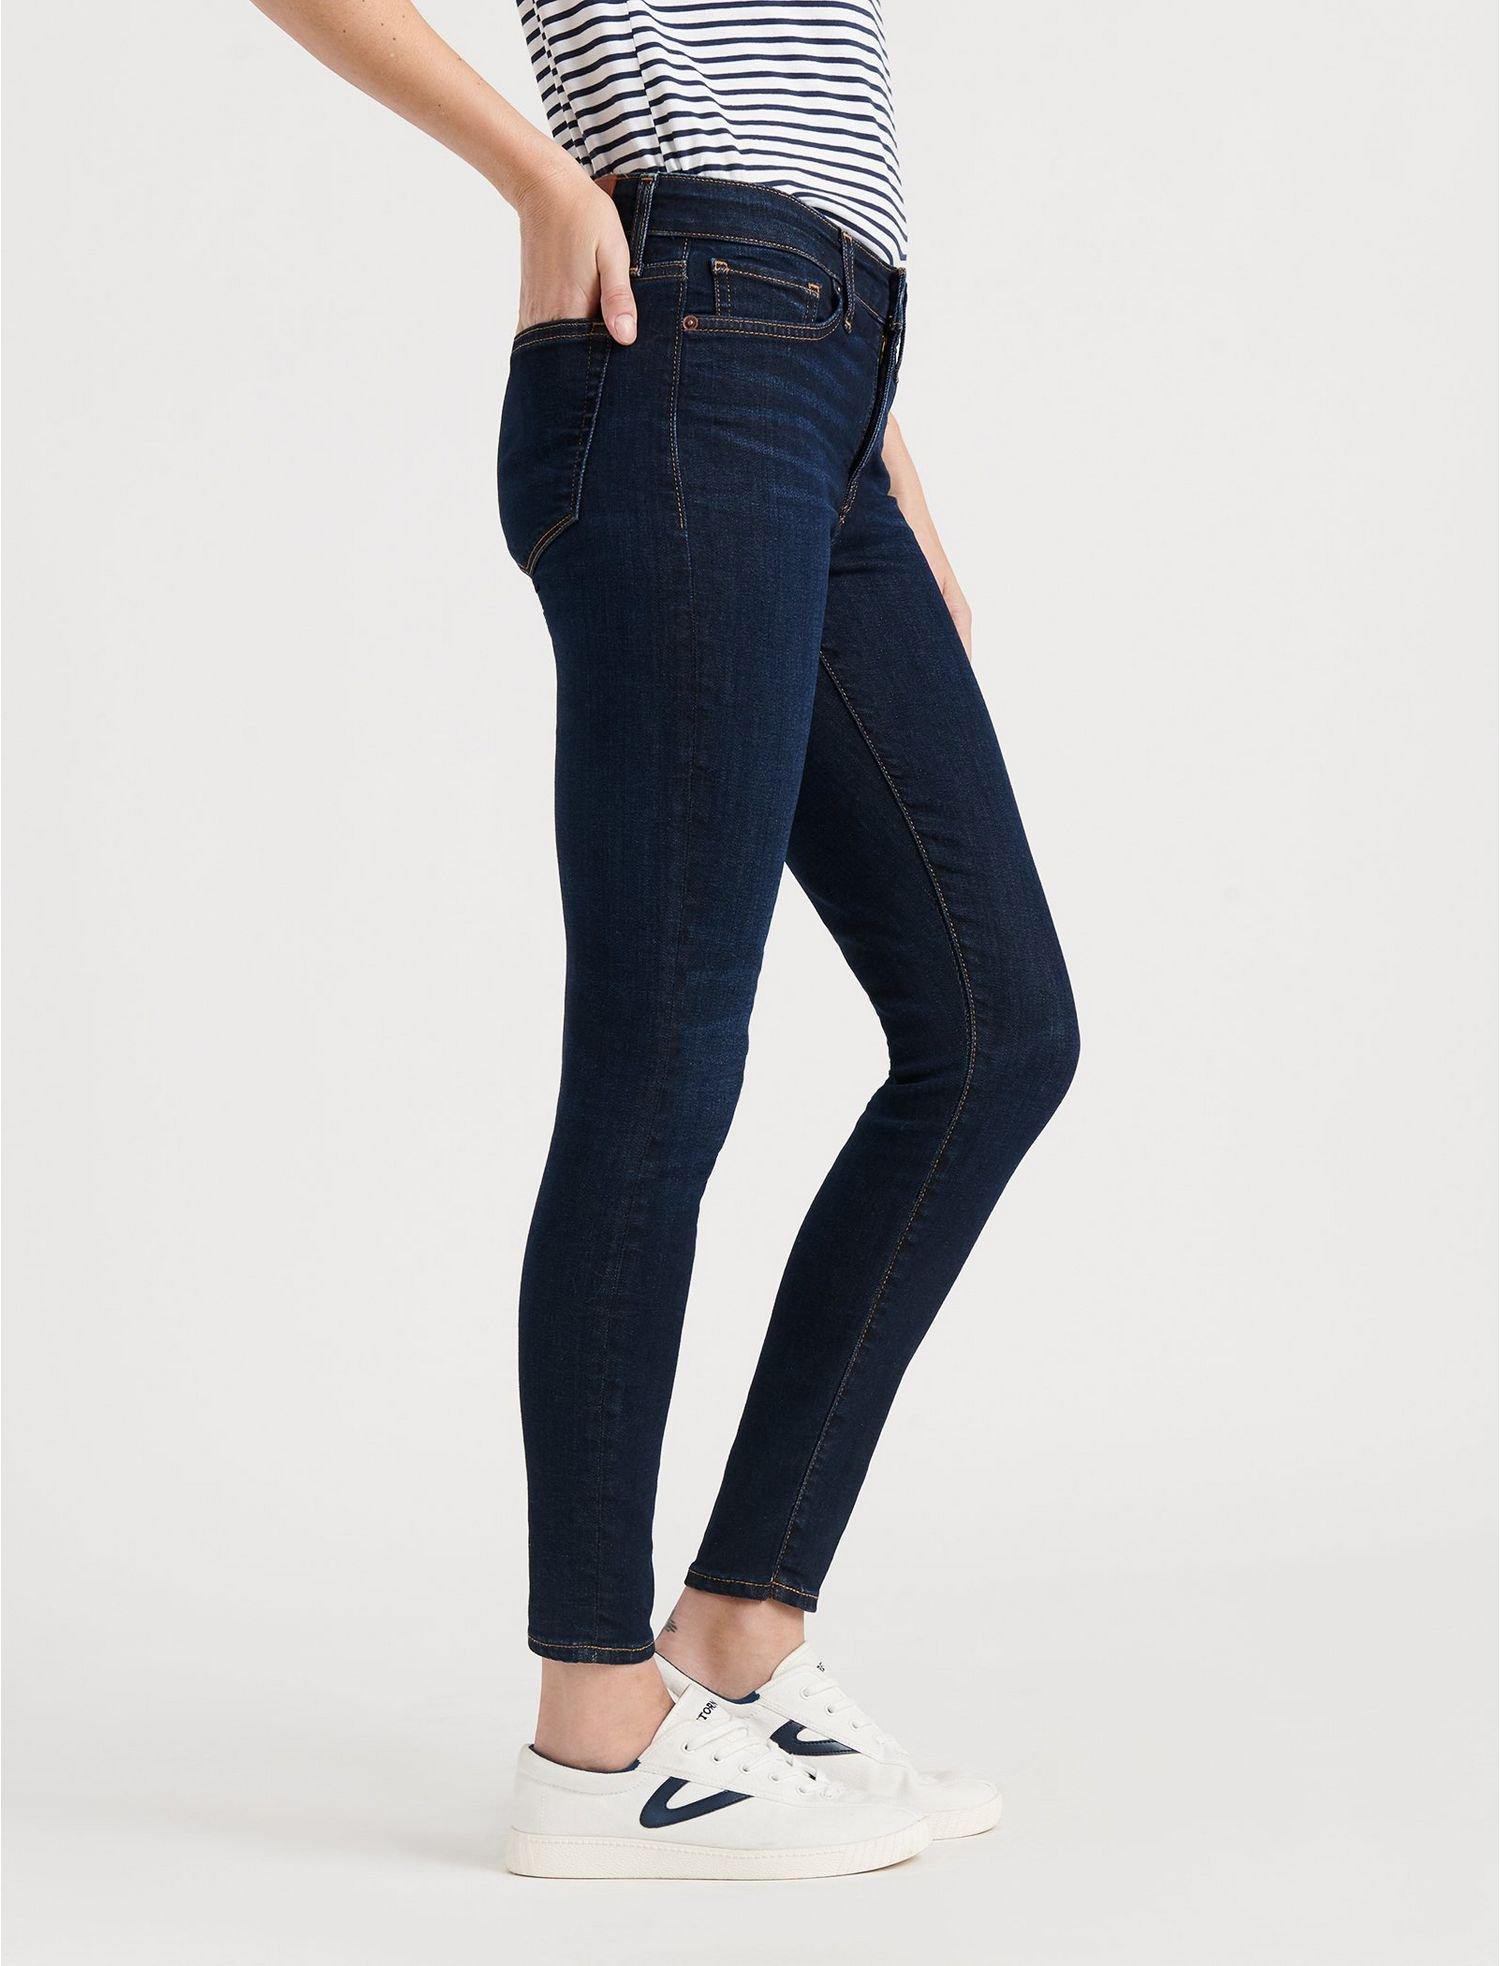 lucky brand jeans women's tall